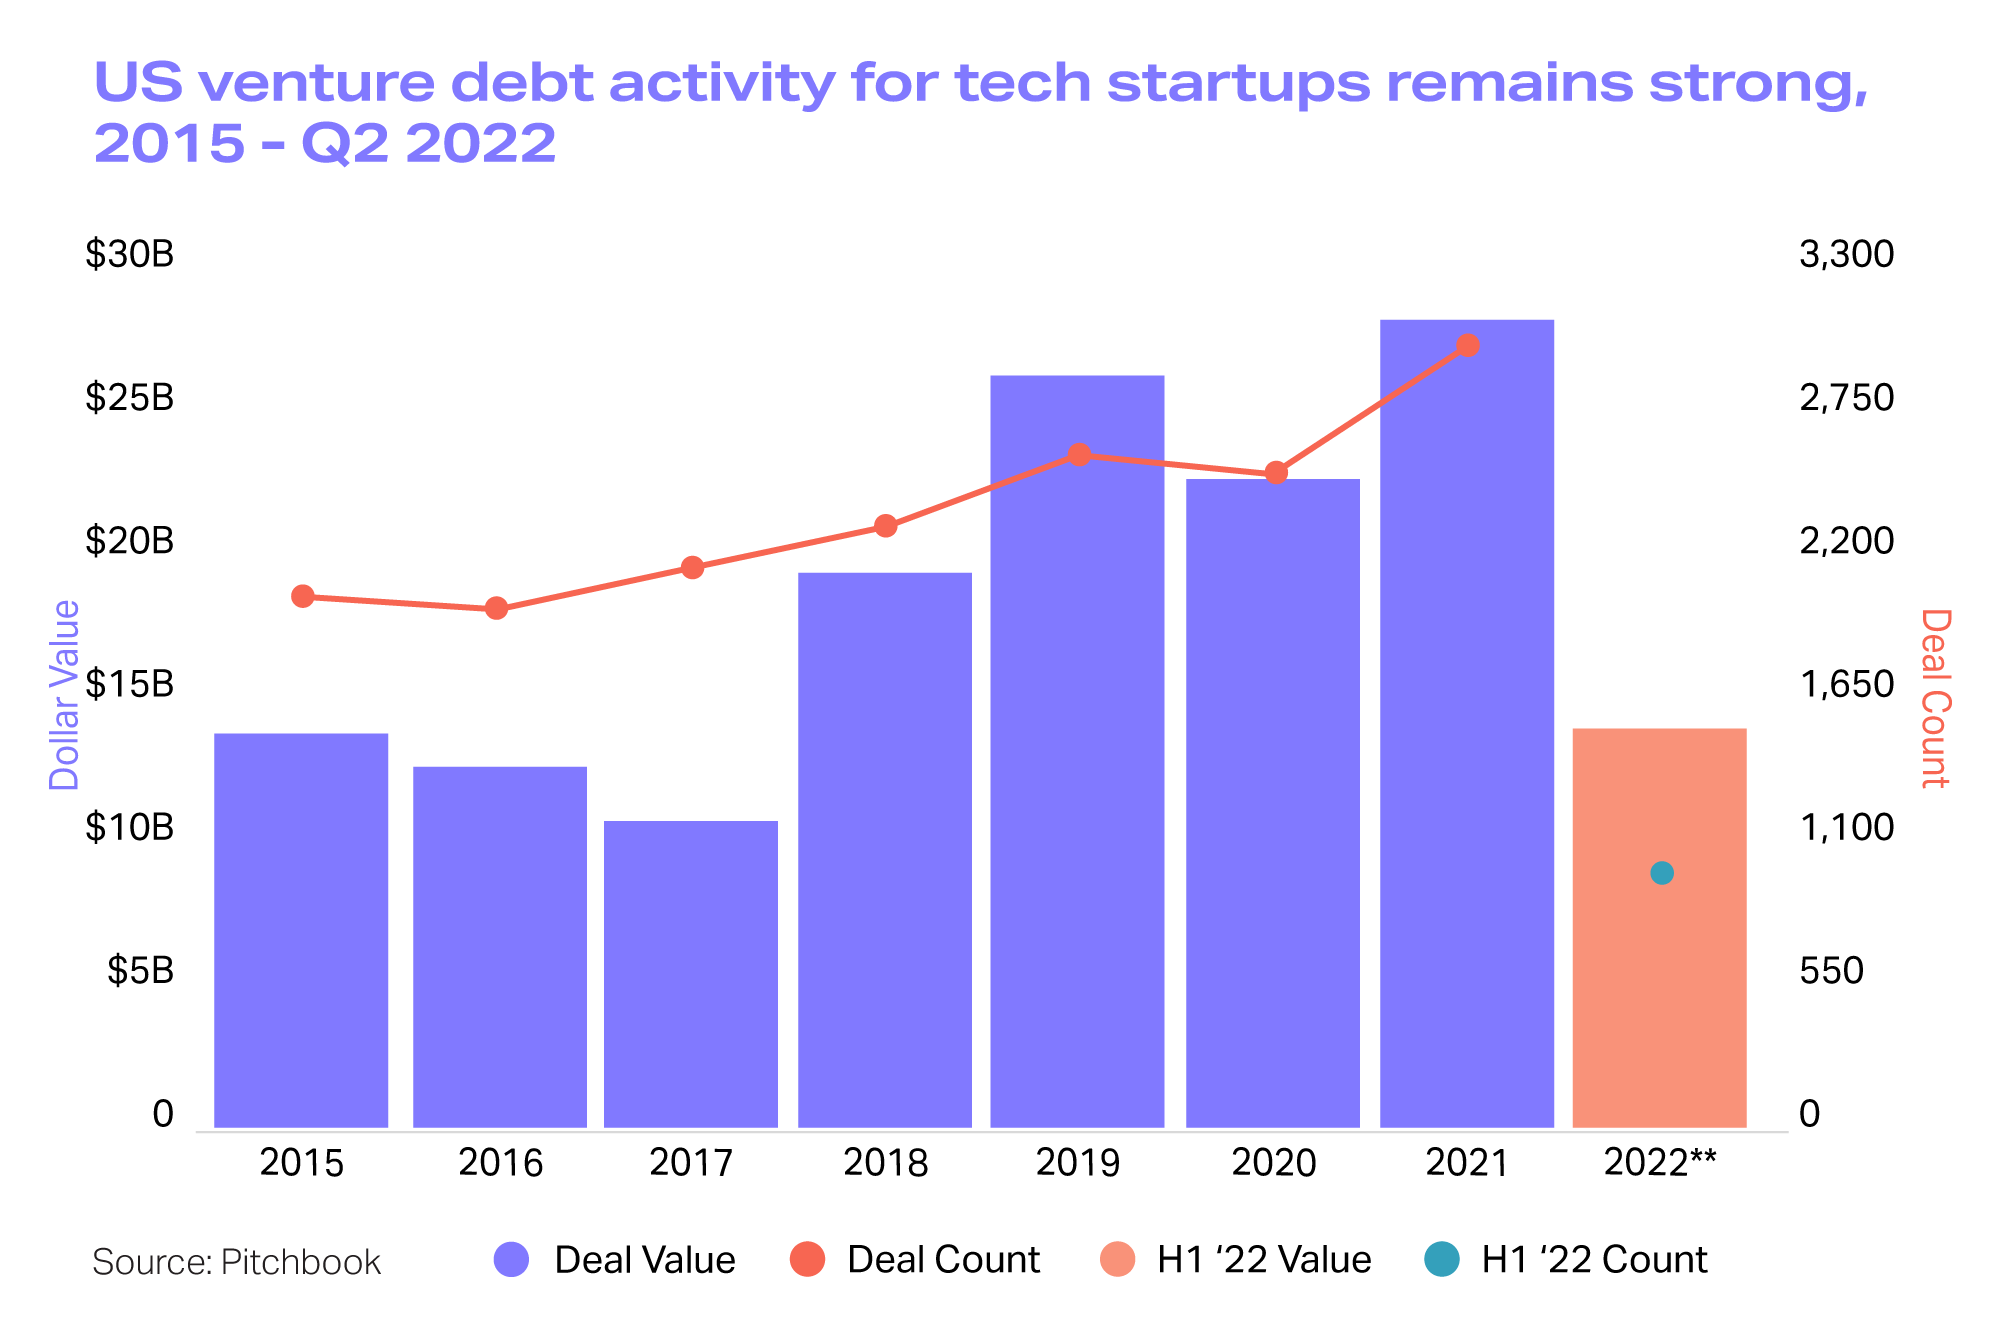 Graph showing US venture debt activity for tech startups, 2015-Q2 2022